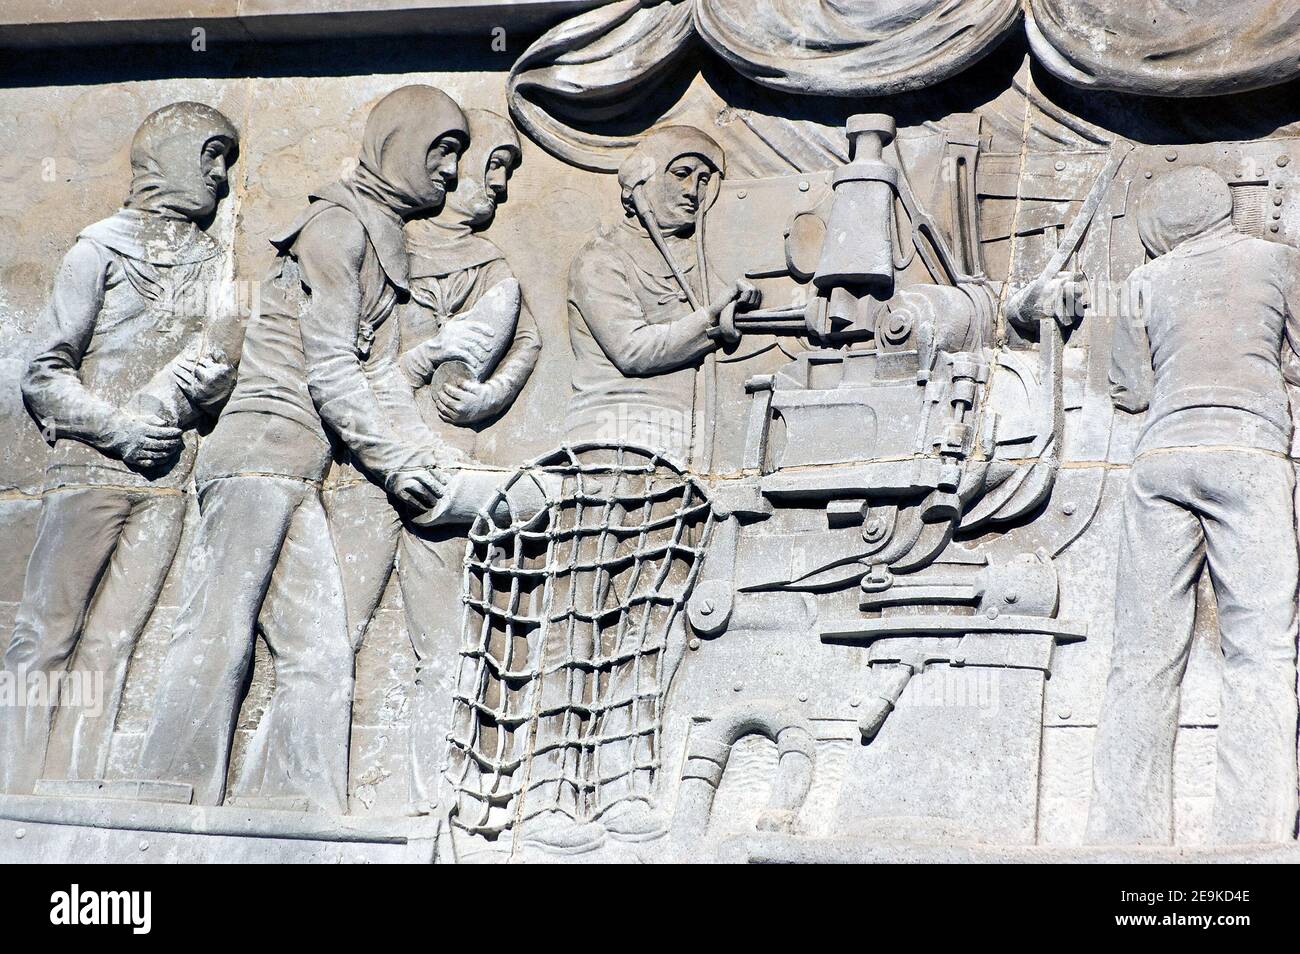 Bas Relief der Royal Navy Matrosen laden eine Waffe. Gemeißelt von Charles Sargeant Jagger (1885 - 1934). Kenotaph Kriegsdenkmal, Guildhall Square, Portsmouth Stockfoto